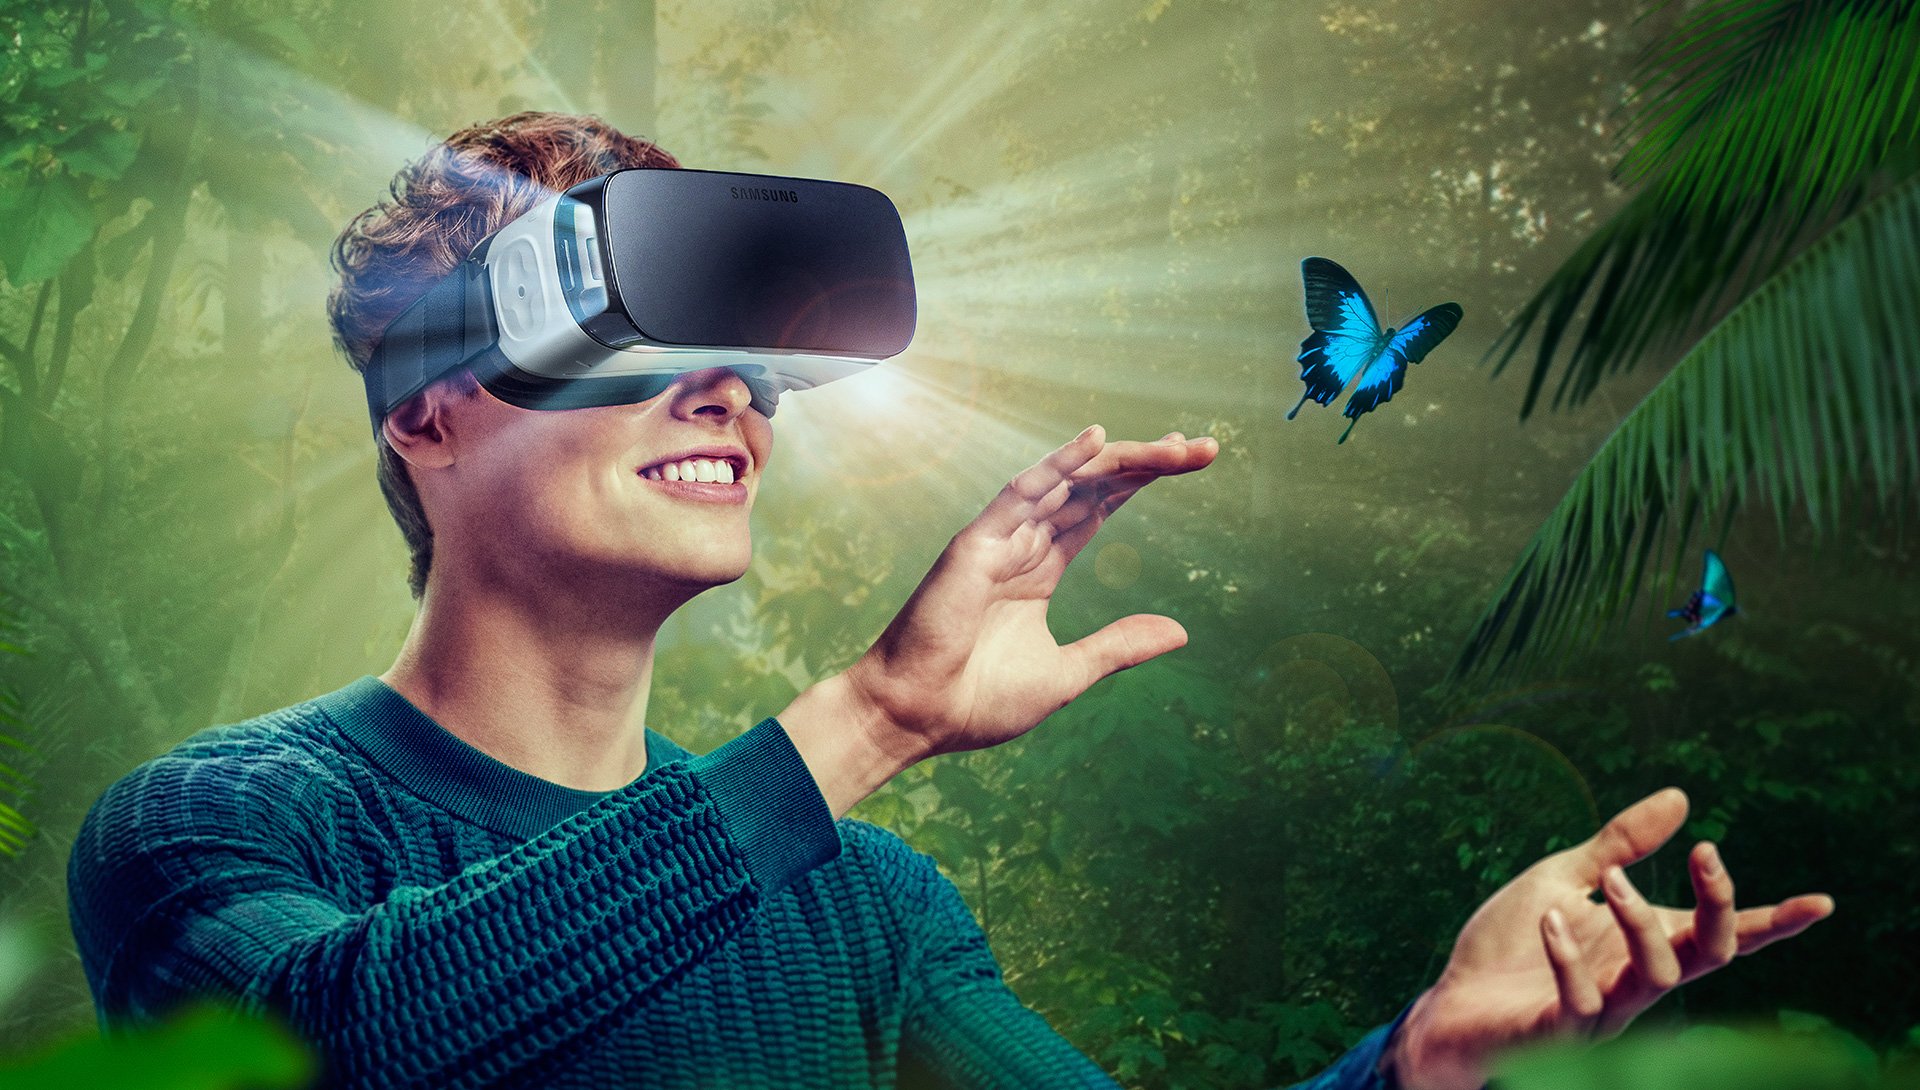 Игры 3д реальность. VR виртуальная реальность. Визуальная реальность. Иртуальная реальность. Очки виртуальной реальности на человеке.